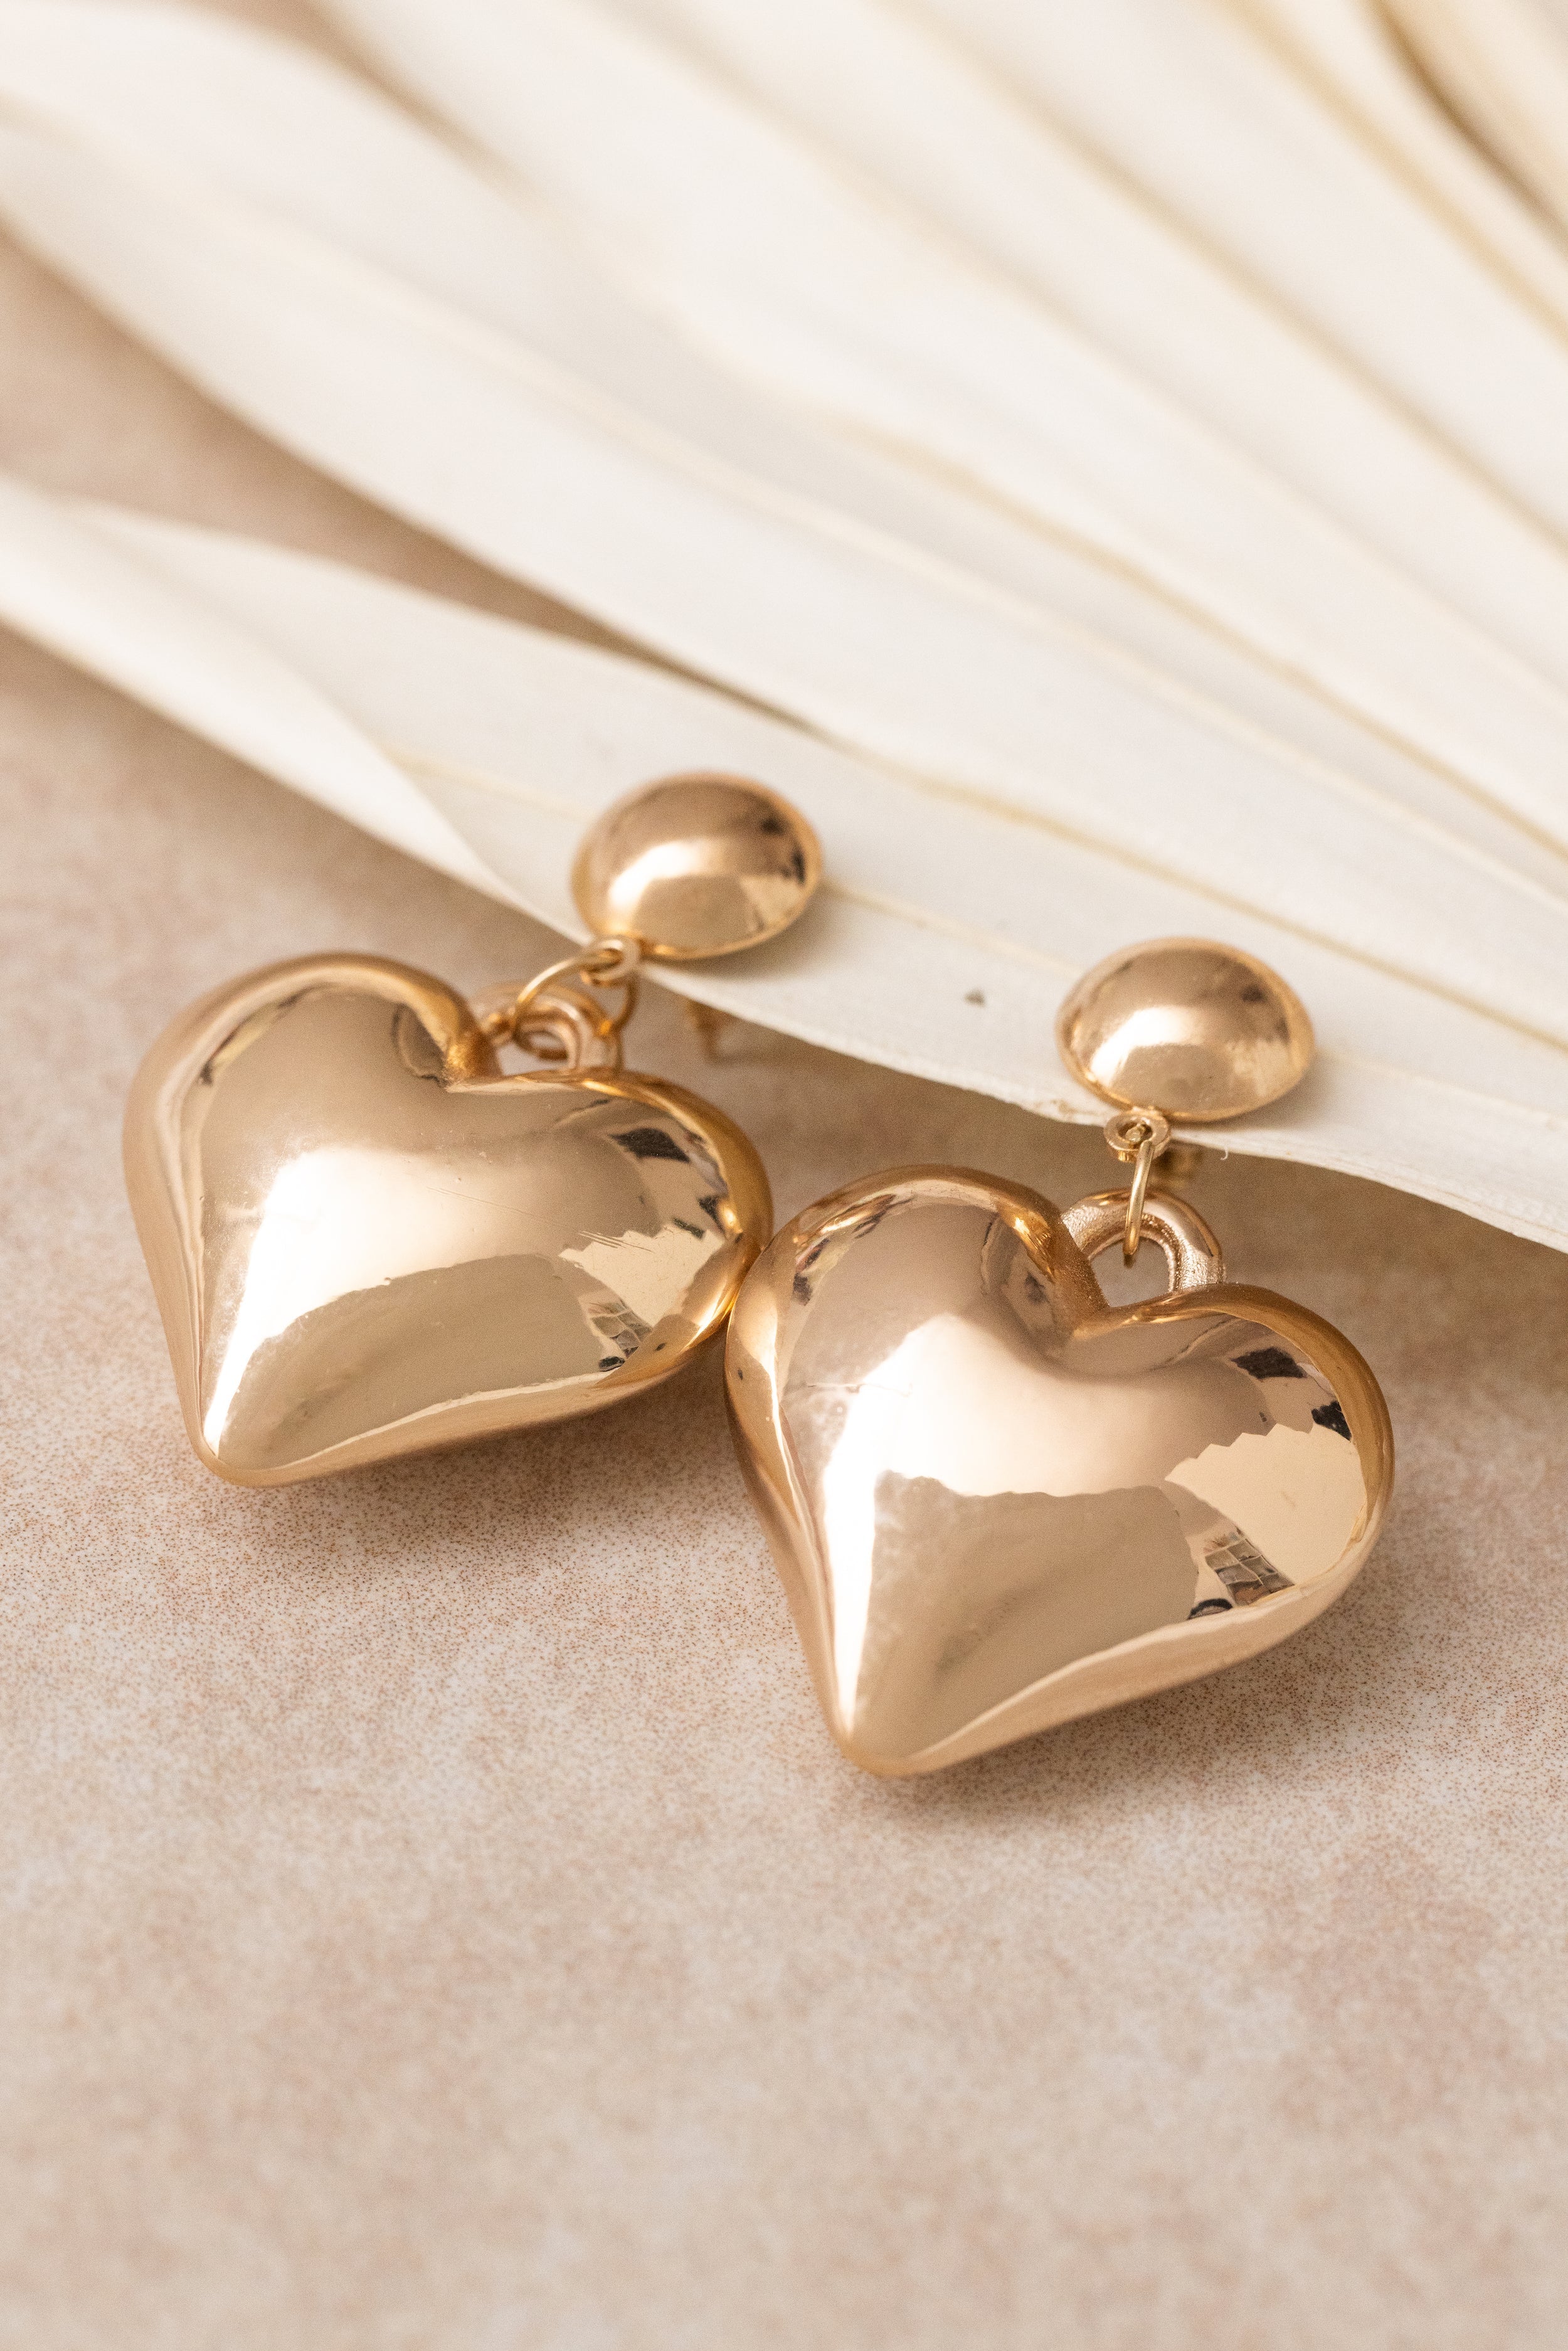 Big Heart Dangle Earrings, Personalized word earrings, Psychology major,  Heart jewelry, graduation gift, I love Data Earrings — Sora Designs